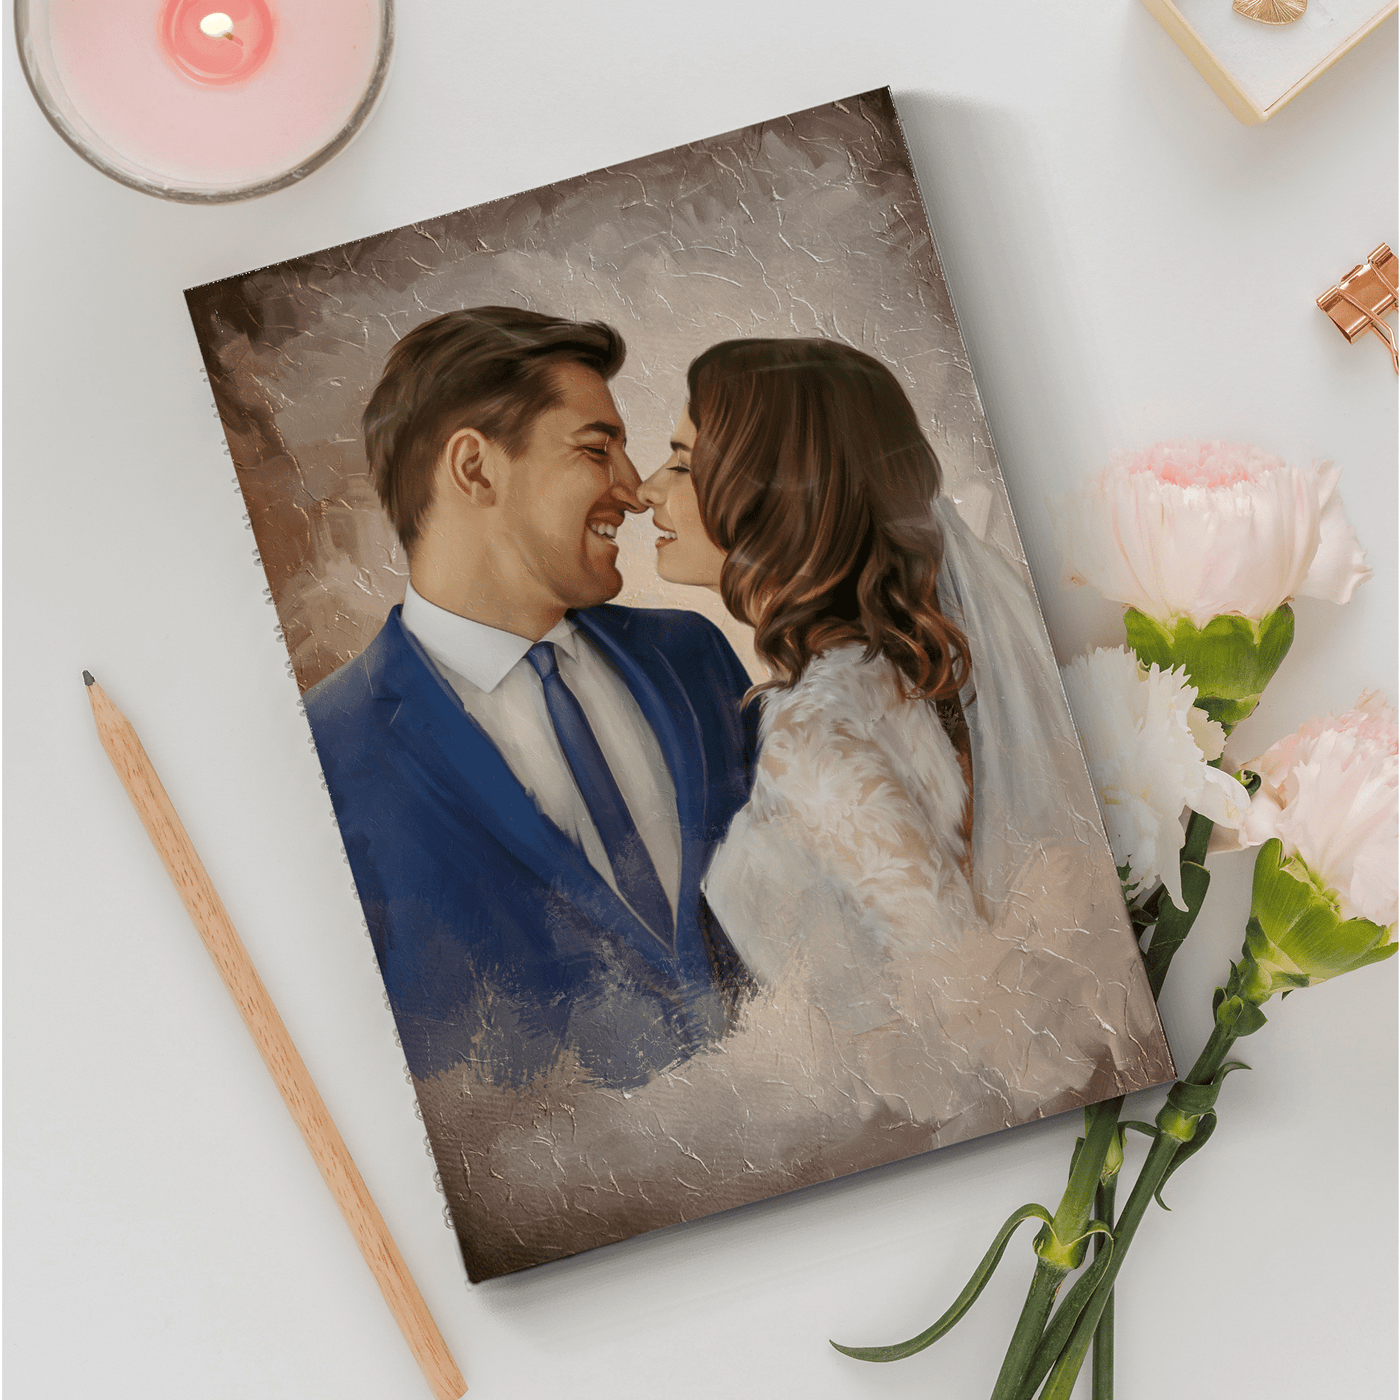 valentine's day pastel portrait of a romantic couple